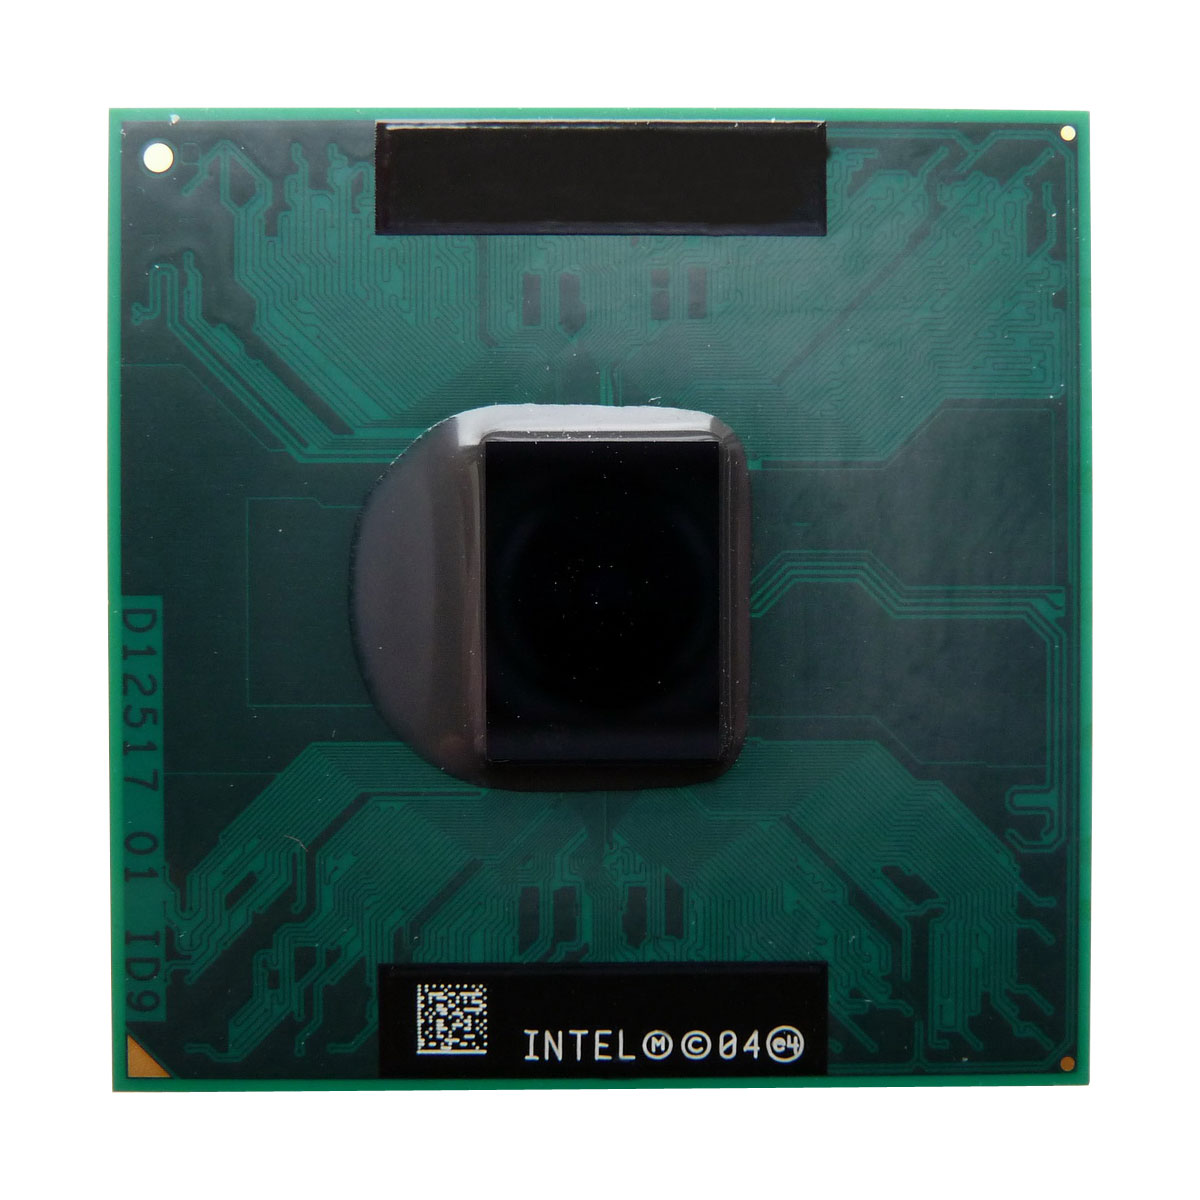 X9799-U Dell 1.66GHz 667MHz FSB 2MB L2 Cache Intel Core Duo T2300 Dual-Core Processor Upgrade